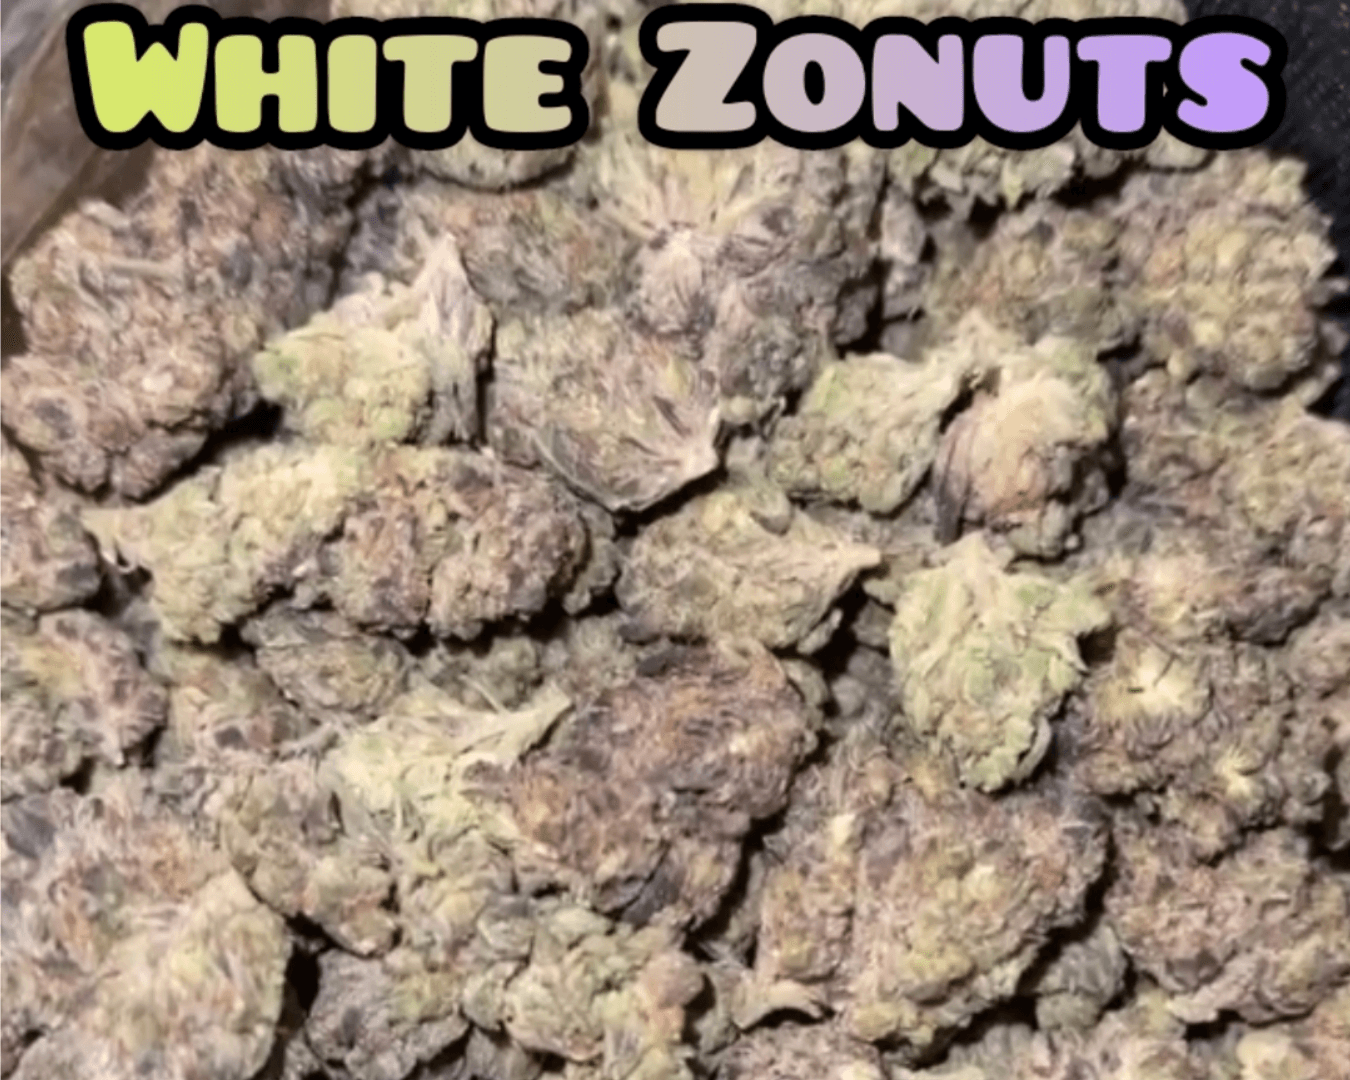 White Zonuts - Hybrid